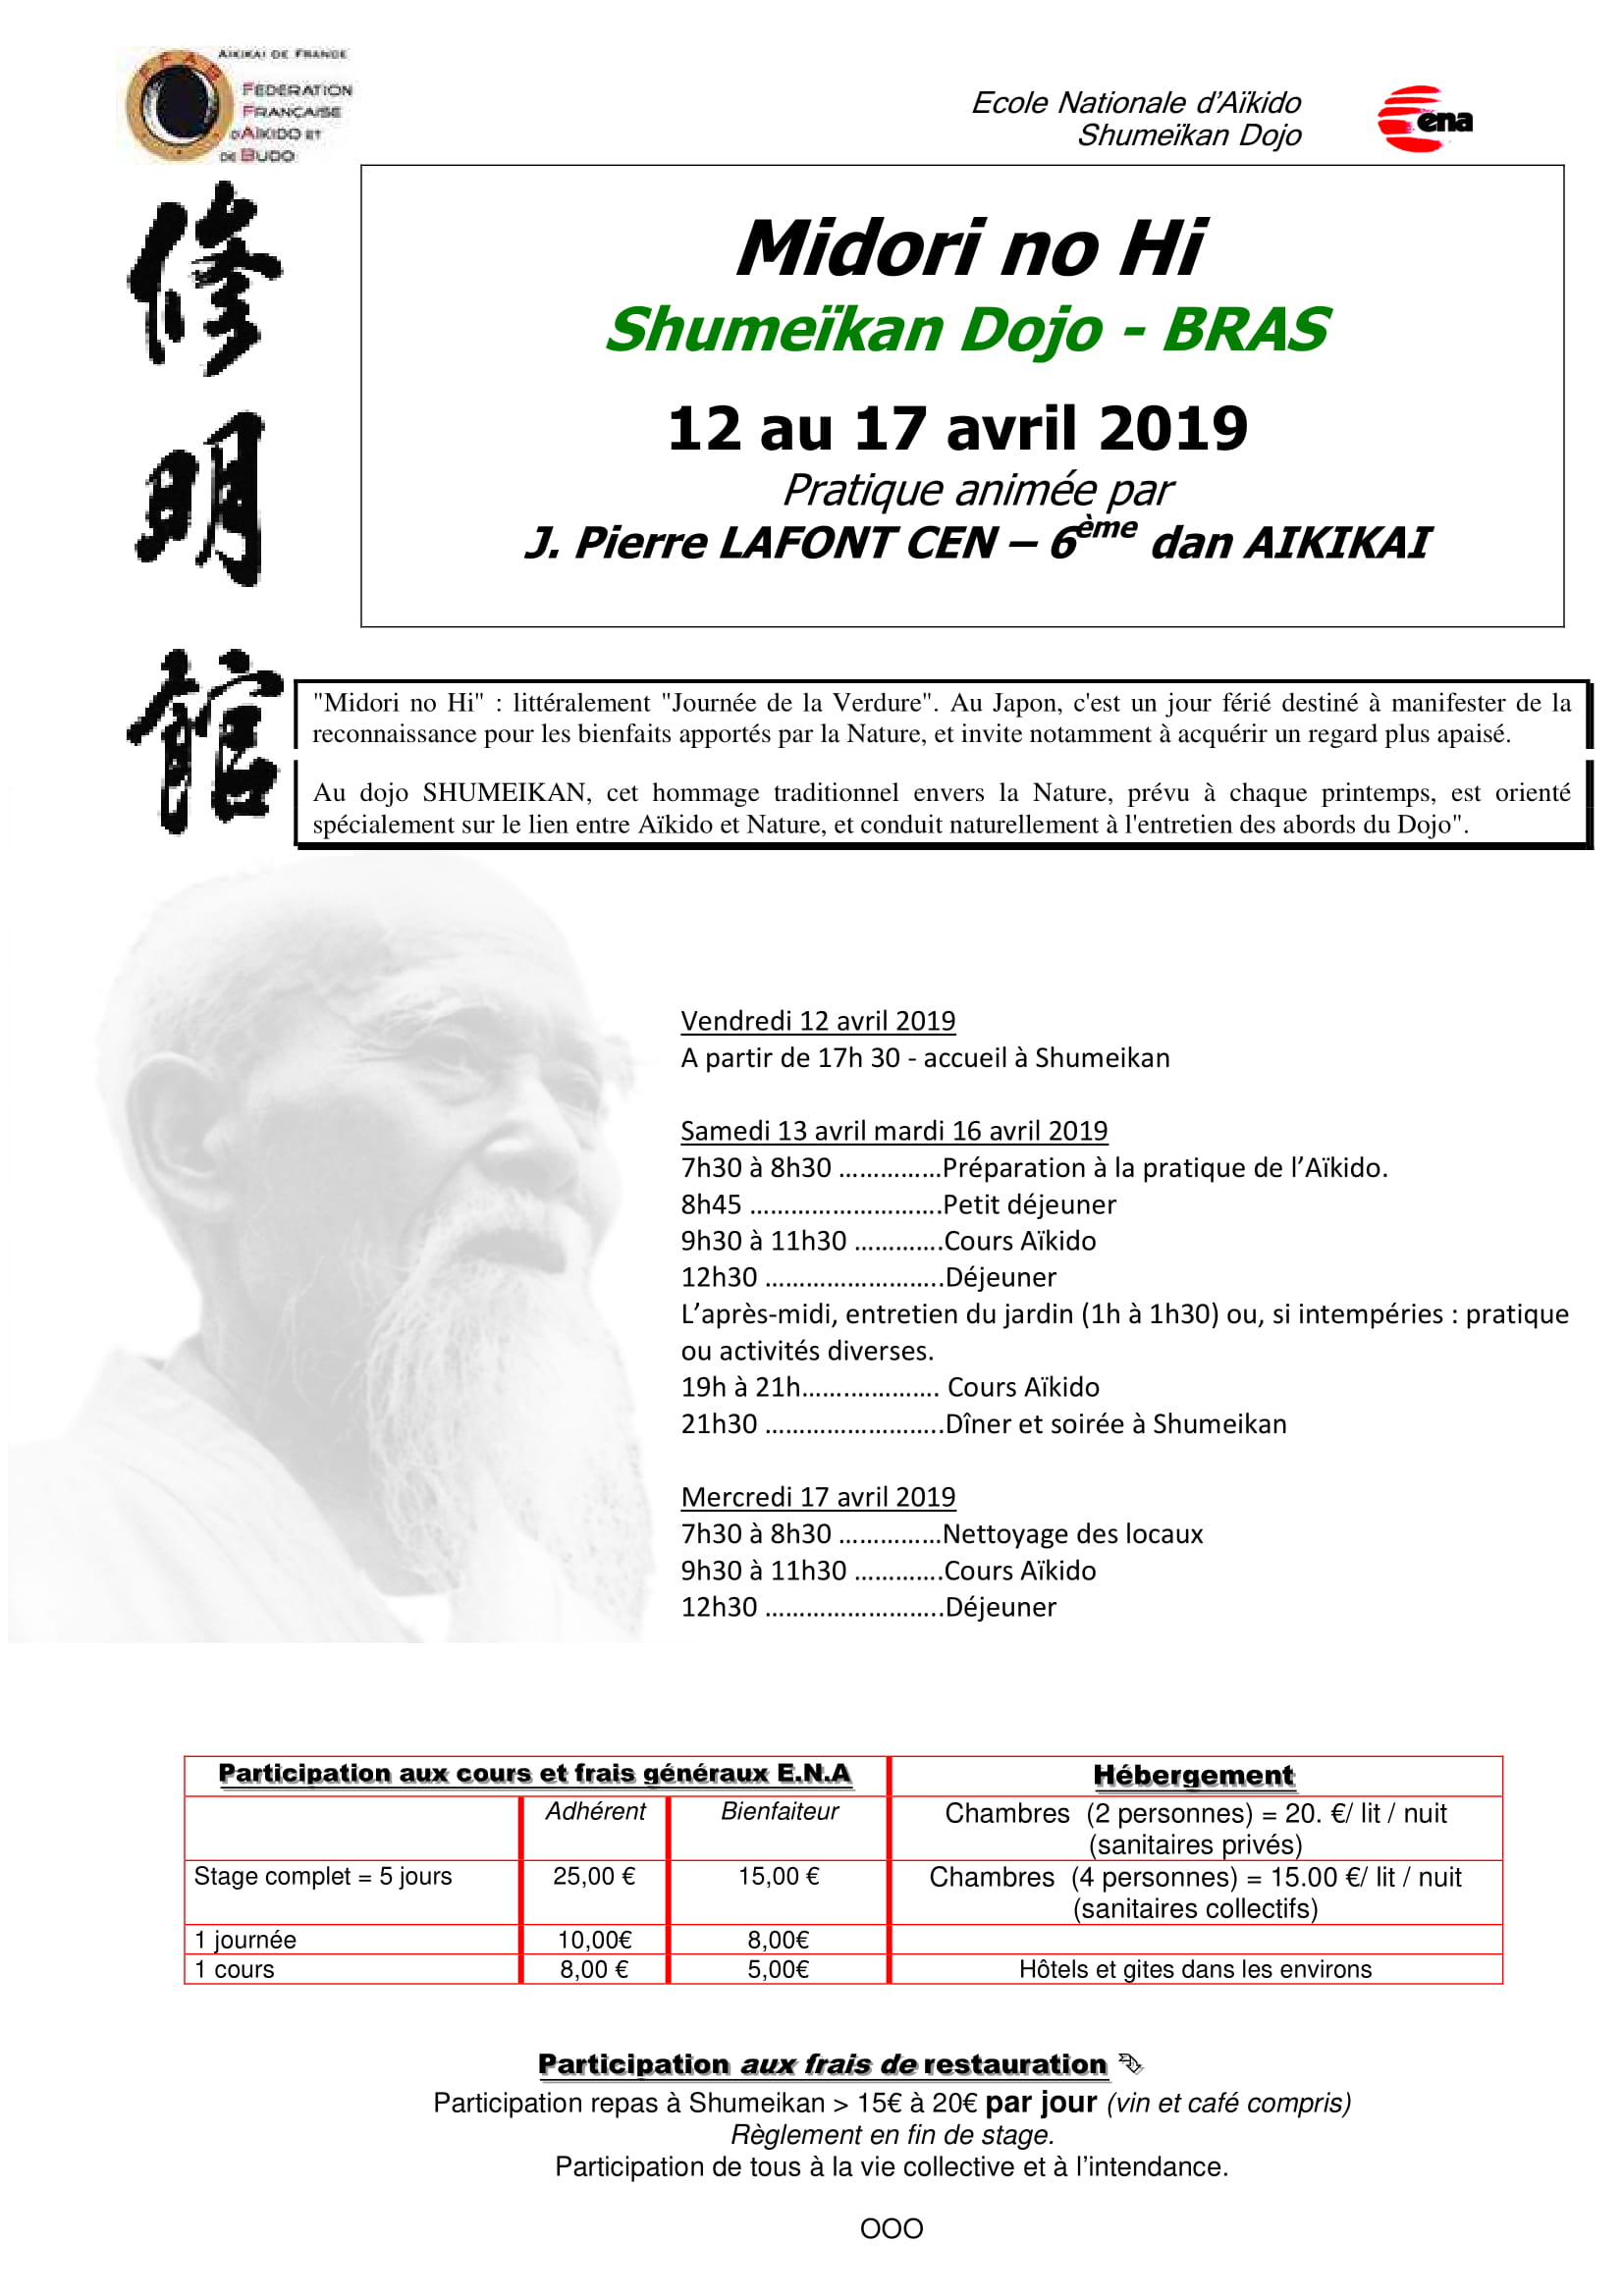 12 au 17 Avril 2019 - "Midori no Hi"  (littéralement "Journée de la Verdure") Au dojo SHUMEIKAN - Pratique animée par J. Pierre LAFONT CEN – 6 ème dan AIKIKAI